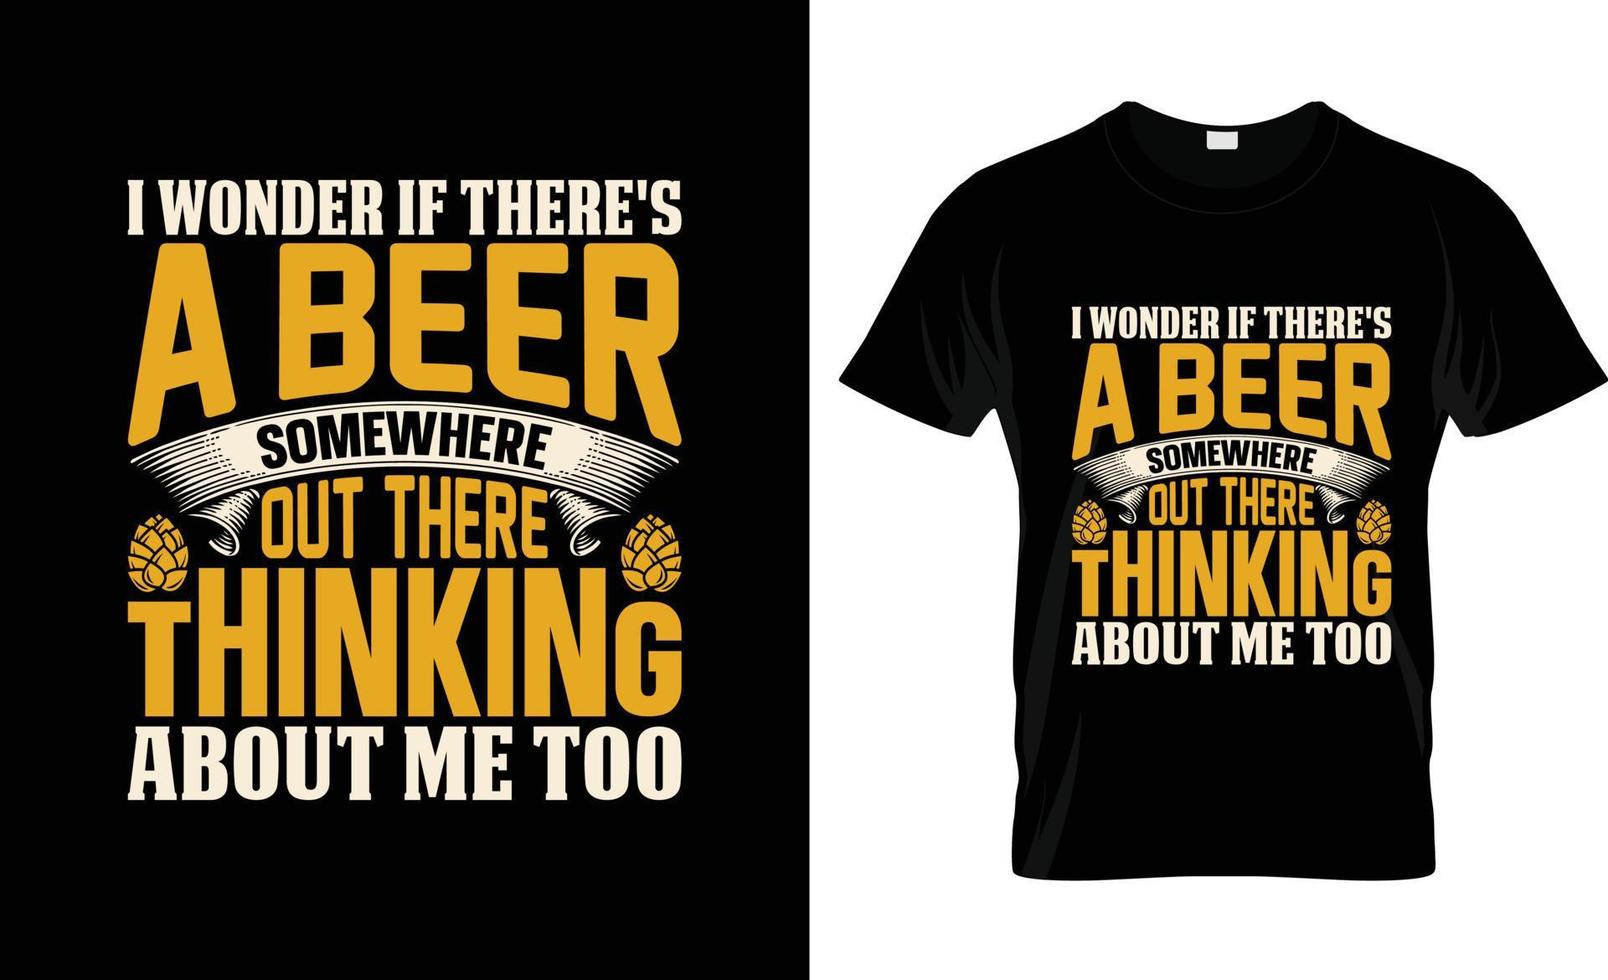 conception de t-shirt de bière artisanale, slogan de t-shirt de bière artisanale et conception de vêtements, typographie de bière artisanale, vecteur de bière artisanale, illustration de bière artisanale